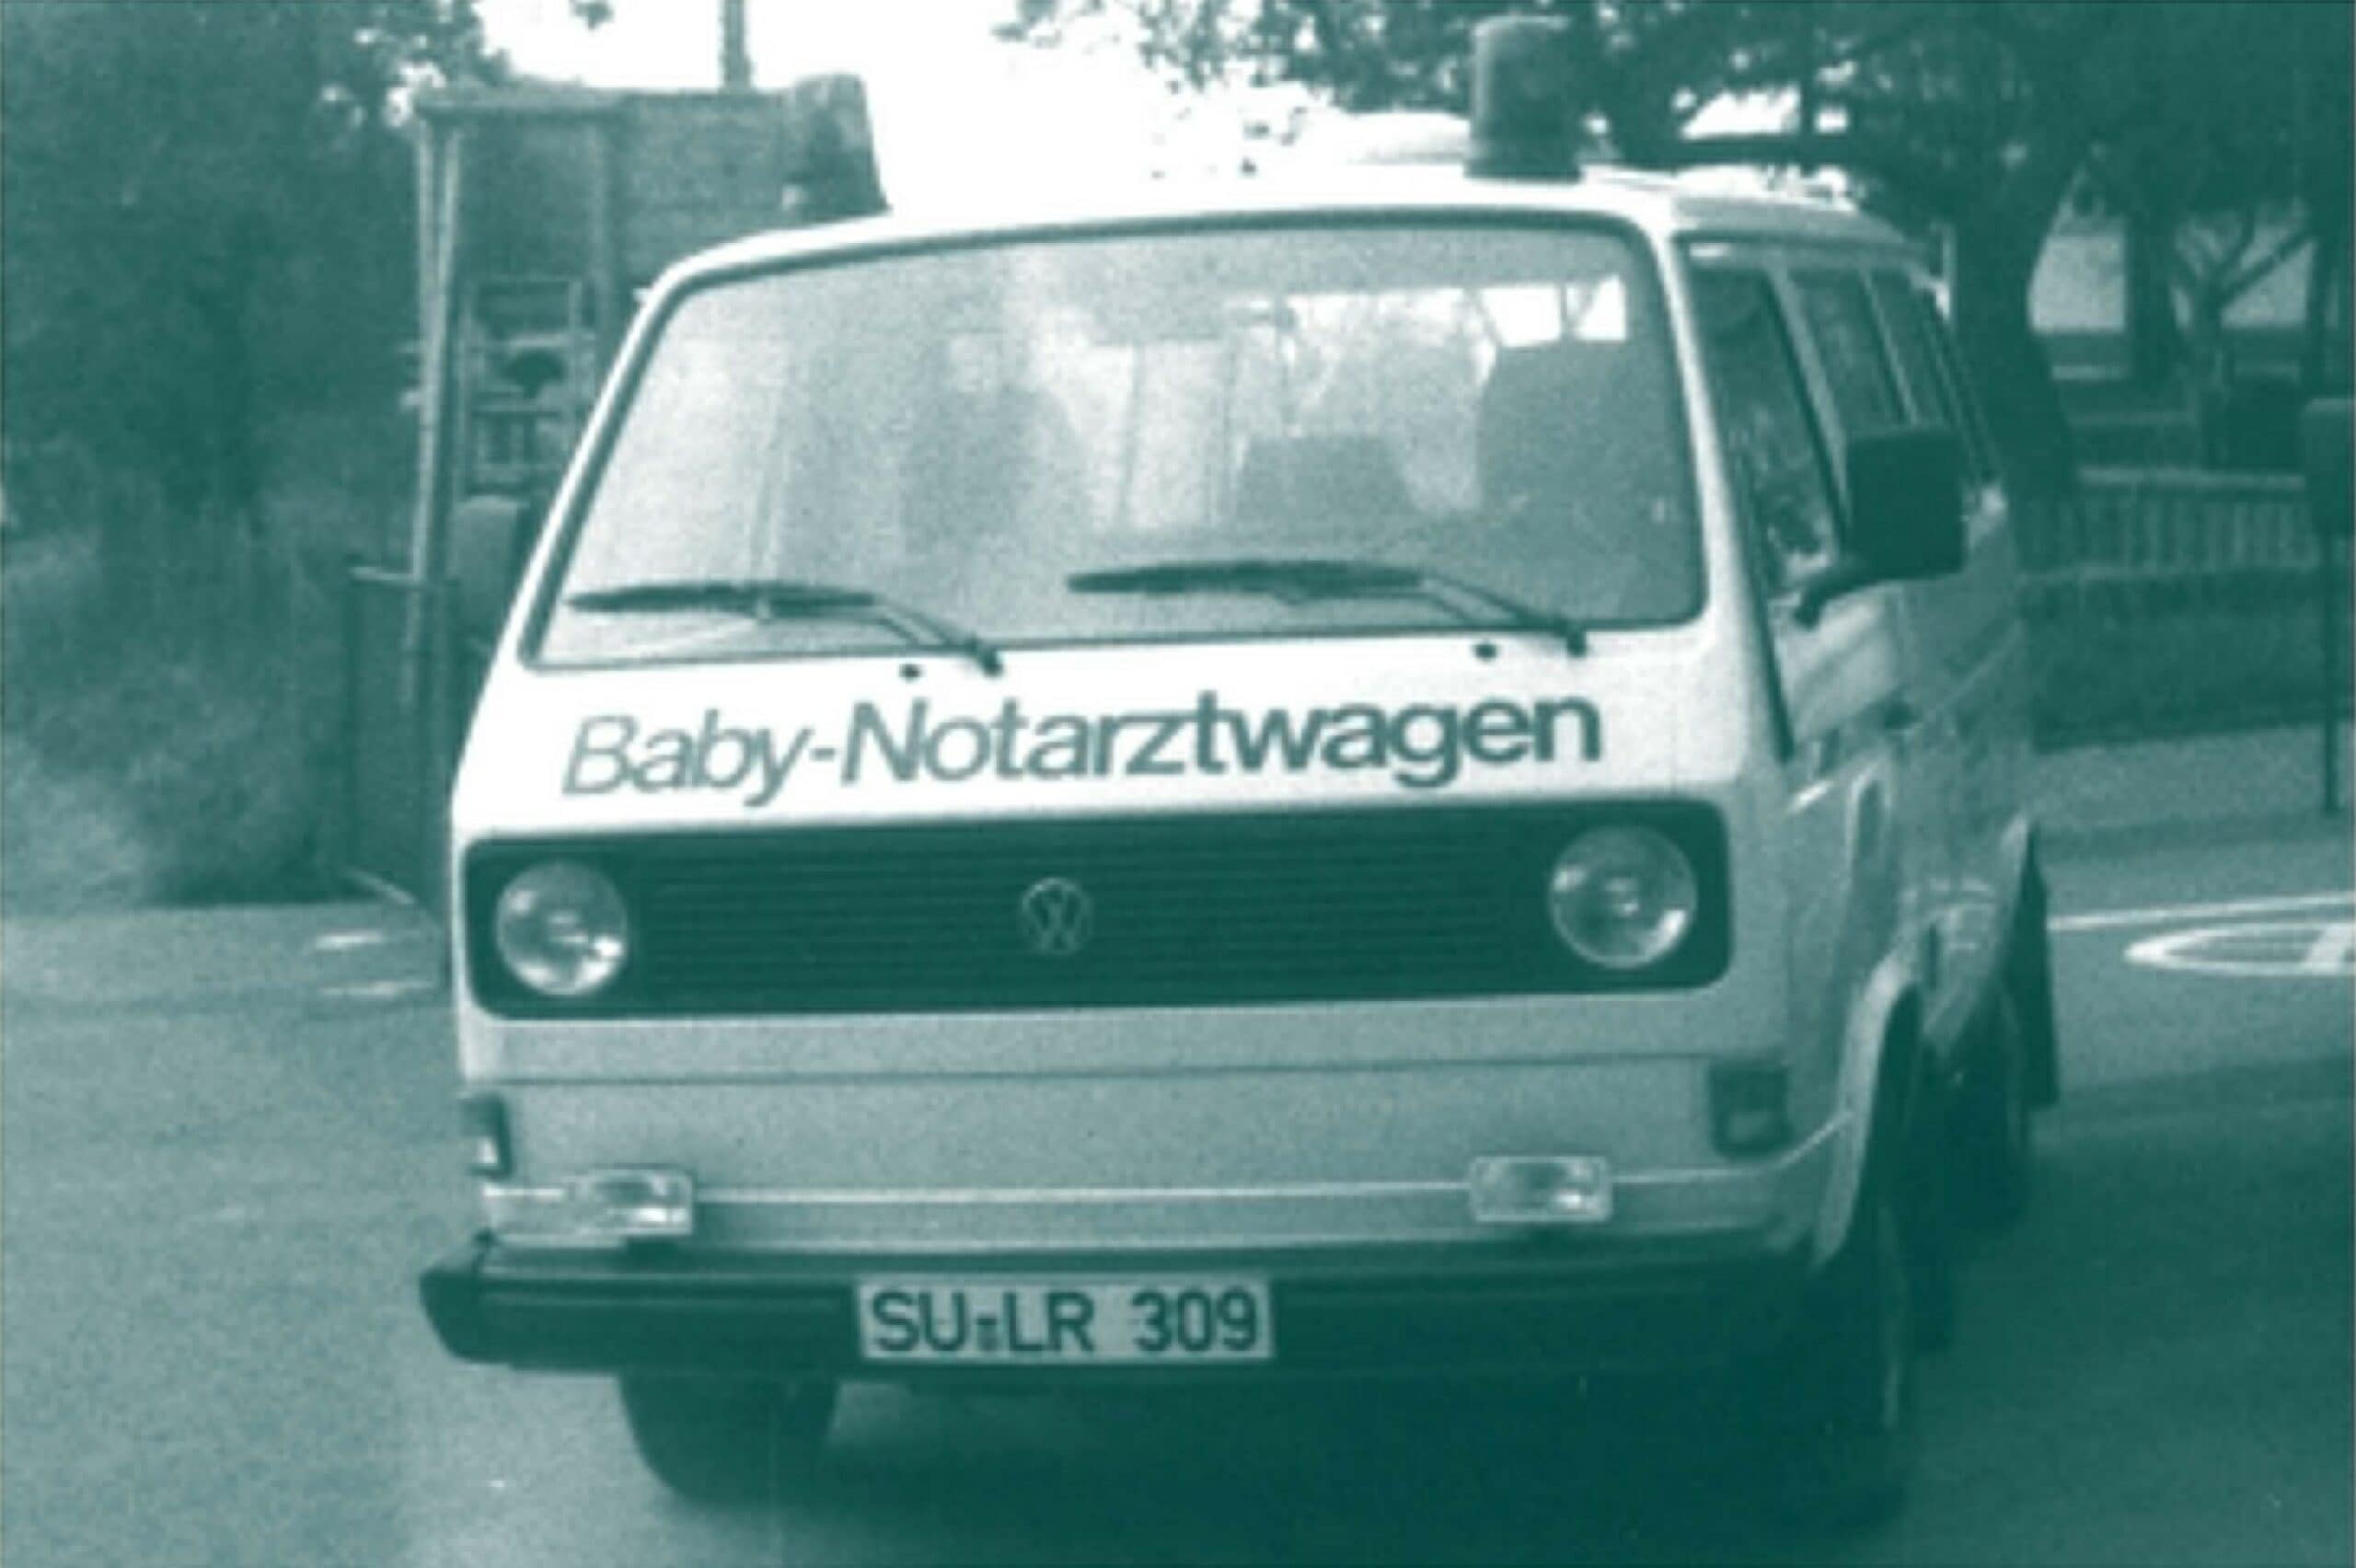 Baby-Notarztwagen 1984: VW T3 Kombi "Baby-Notarztwagen St. Augustin"